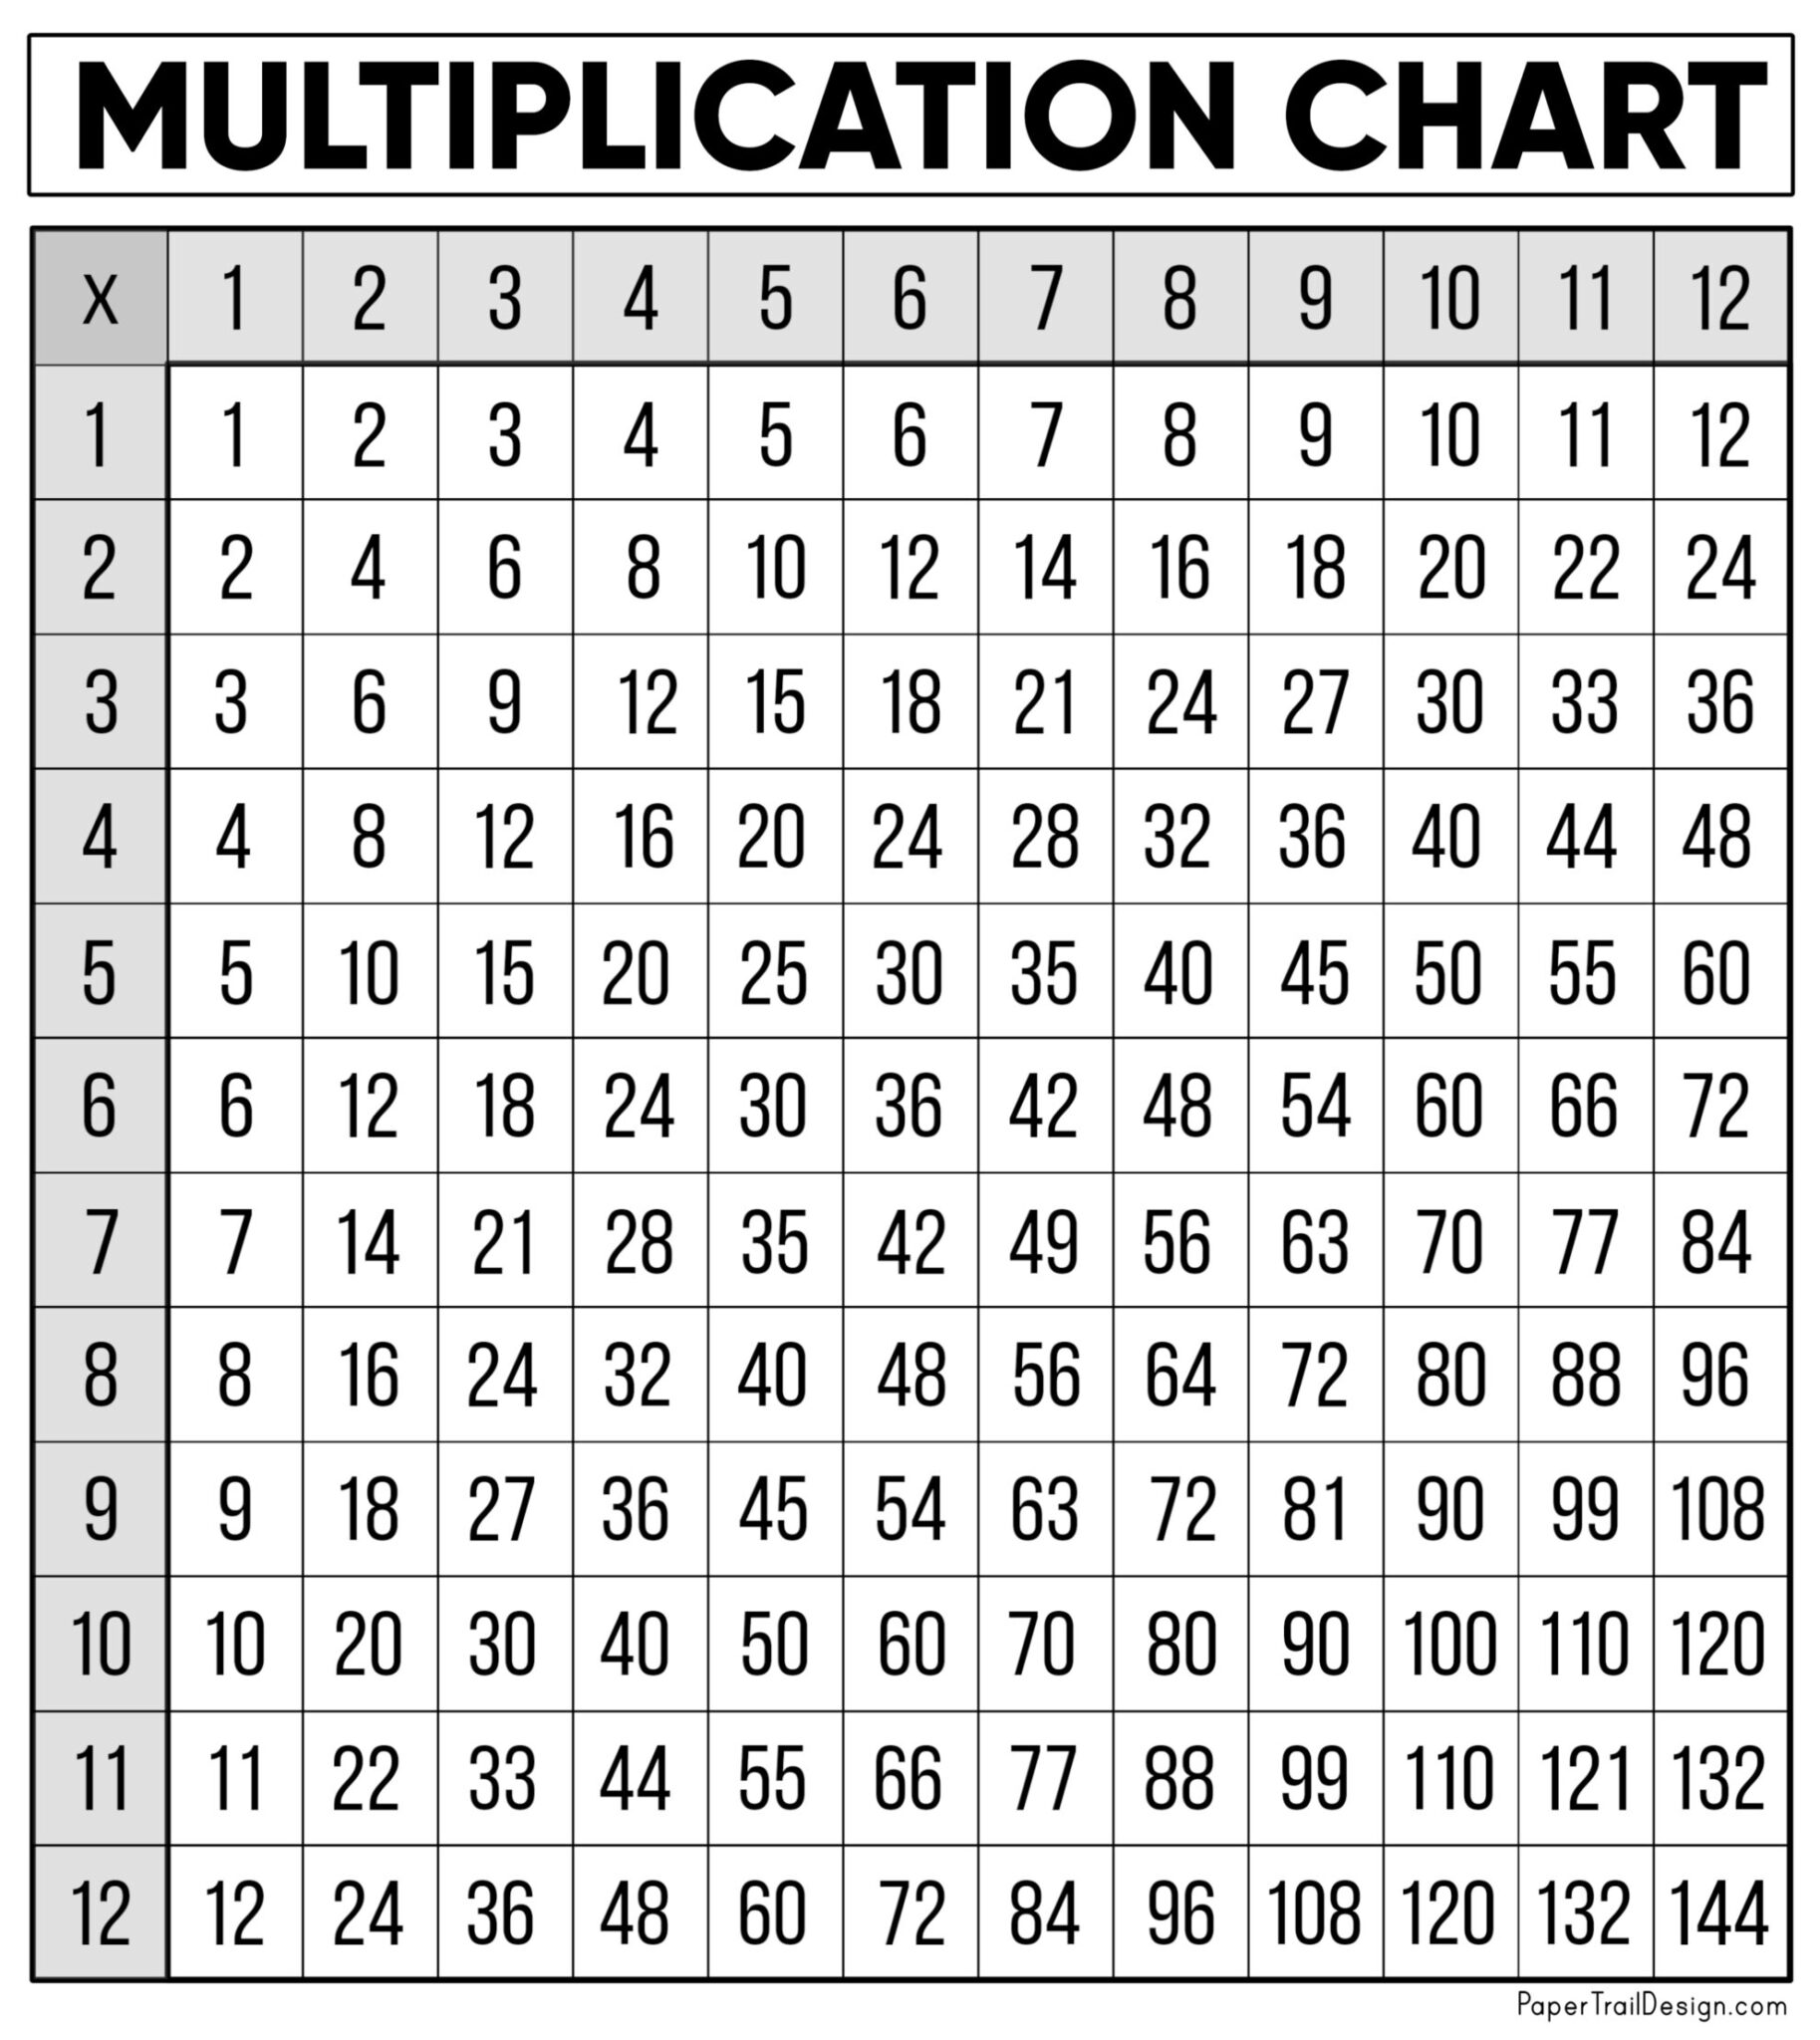 10-viral-multiplication-chart-printable-to-12